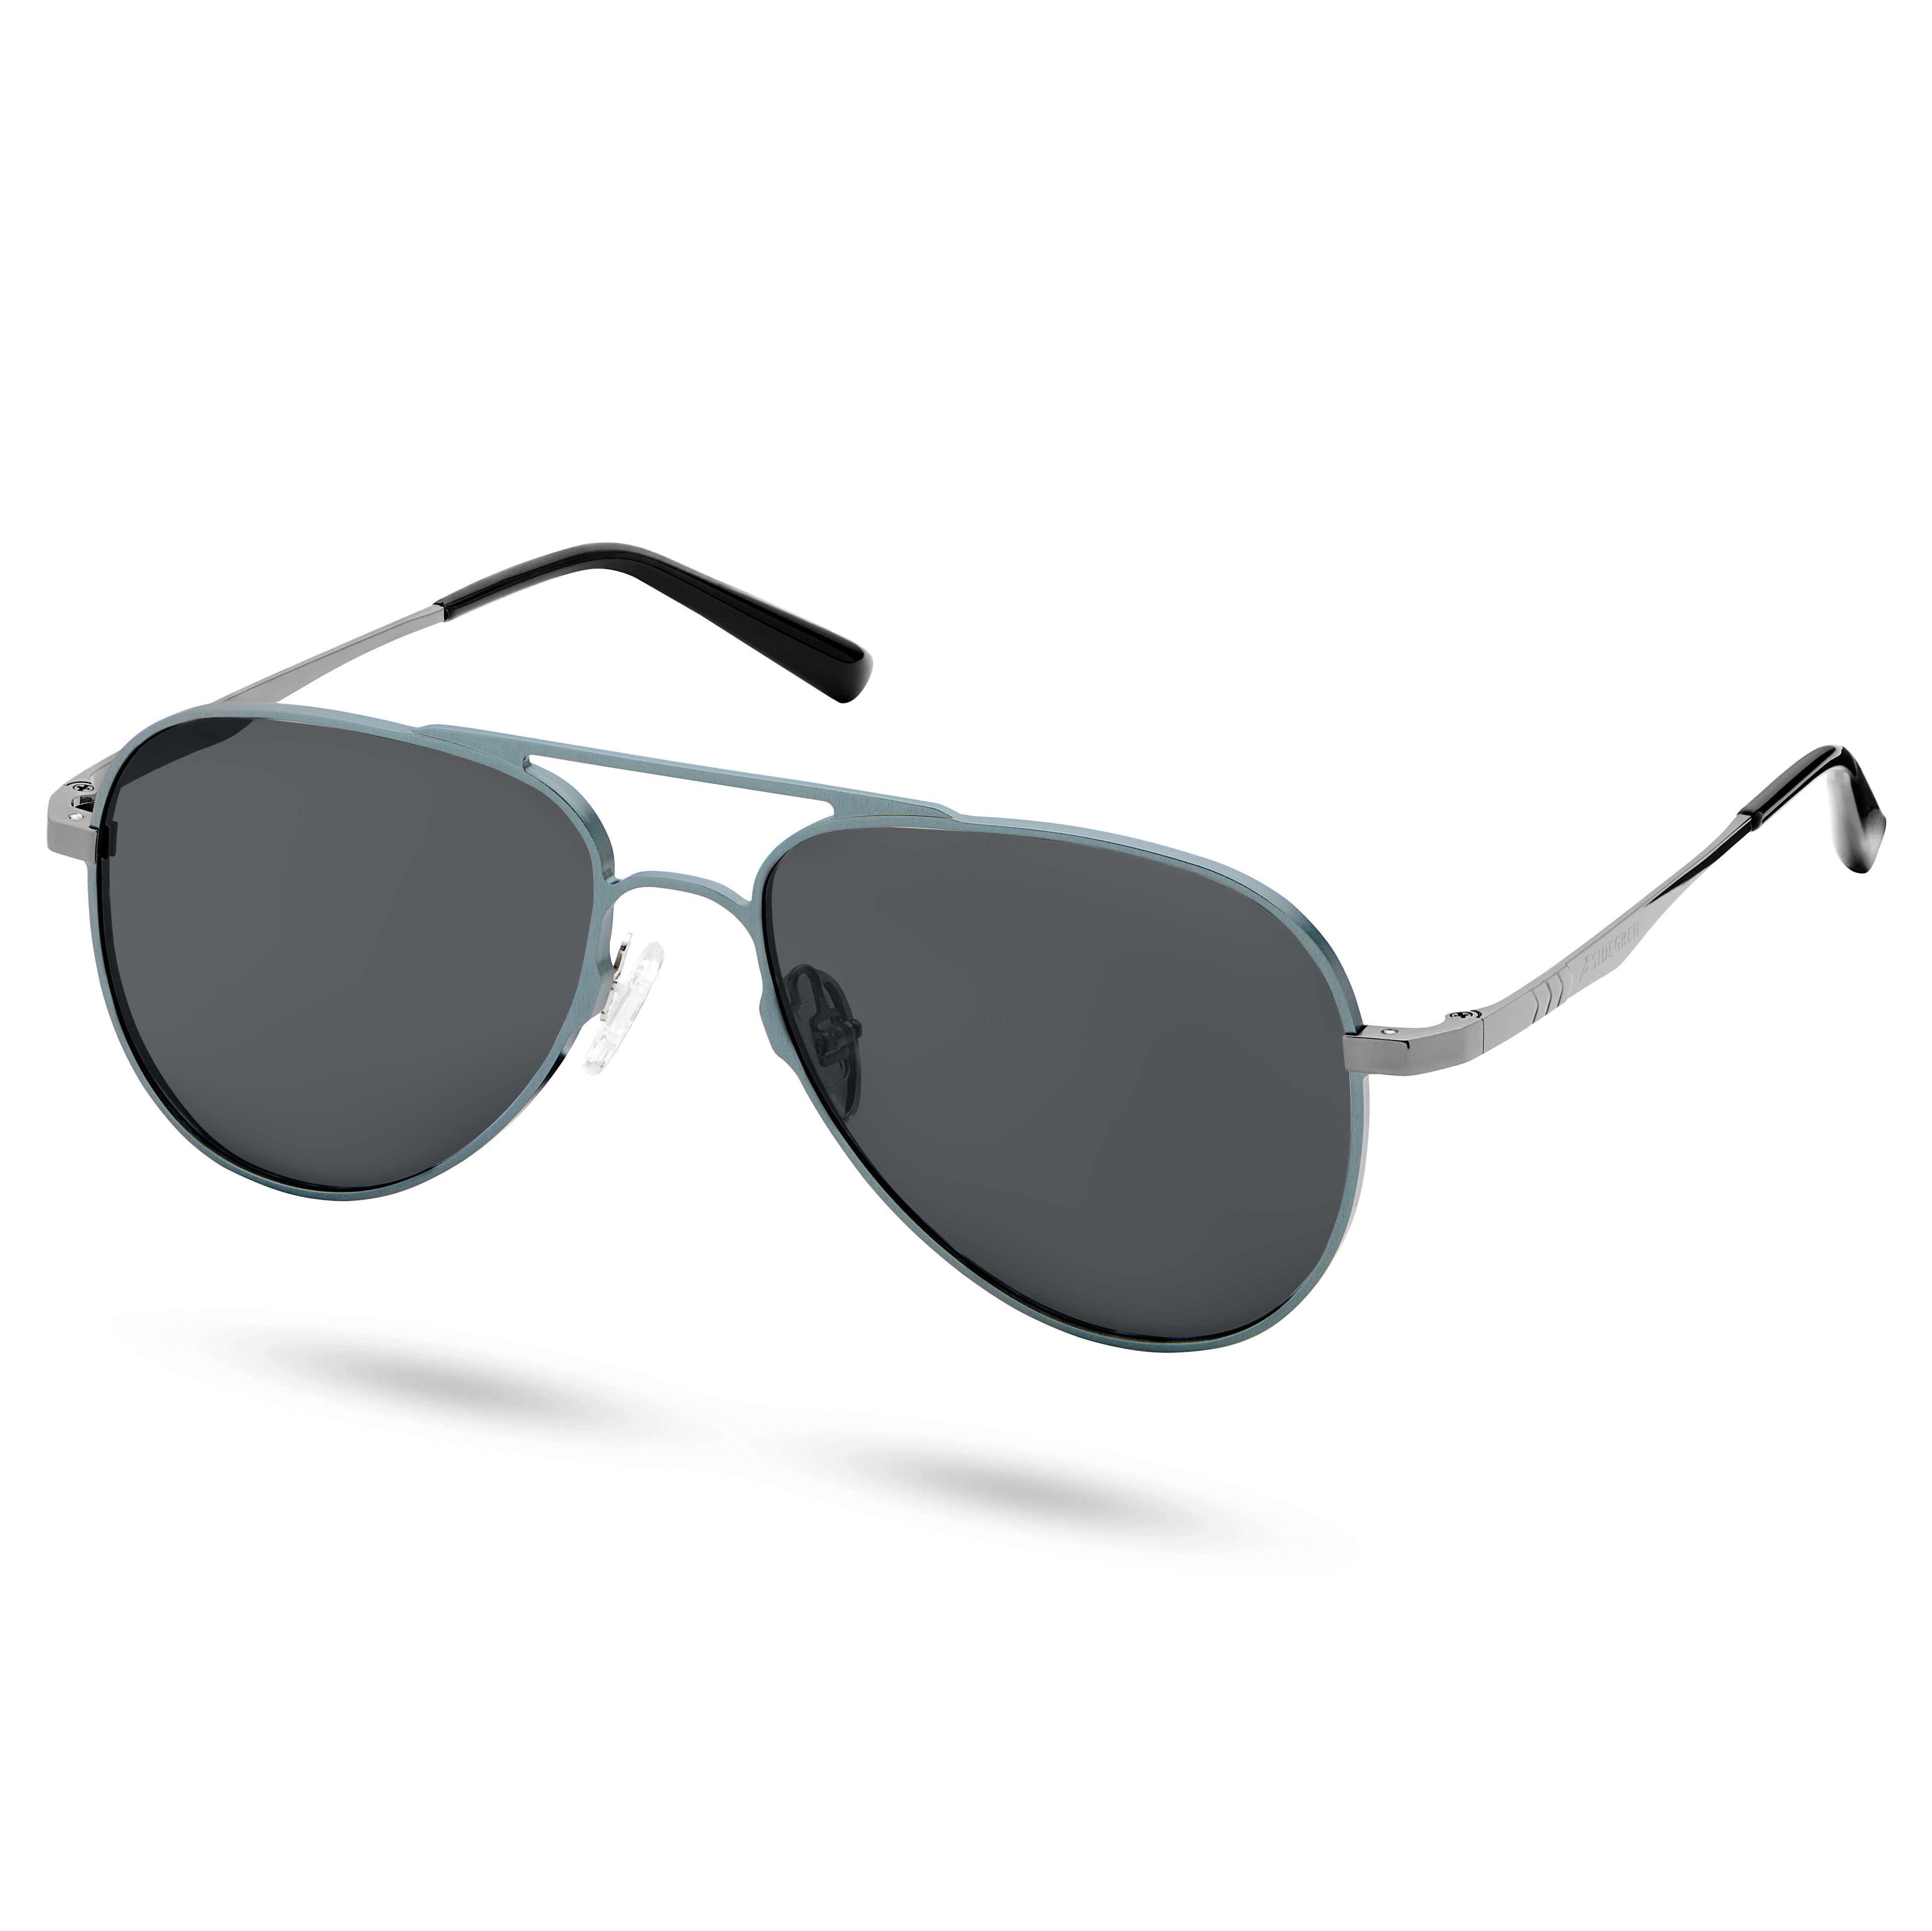 Spiżowo-szare polaryzacyjne okulary przeciwsłoneczne aviator z tytanu